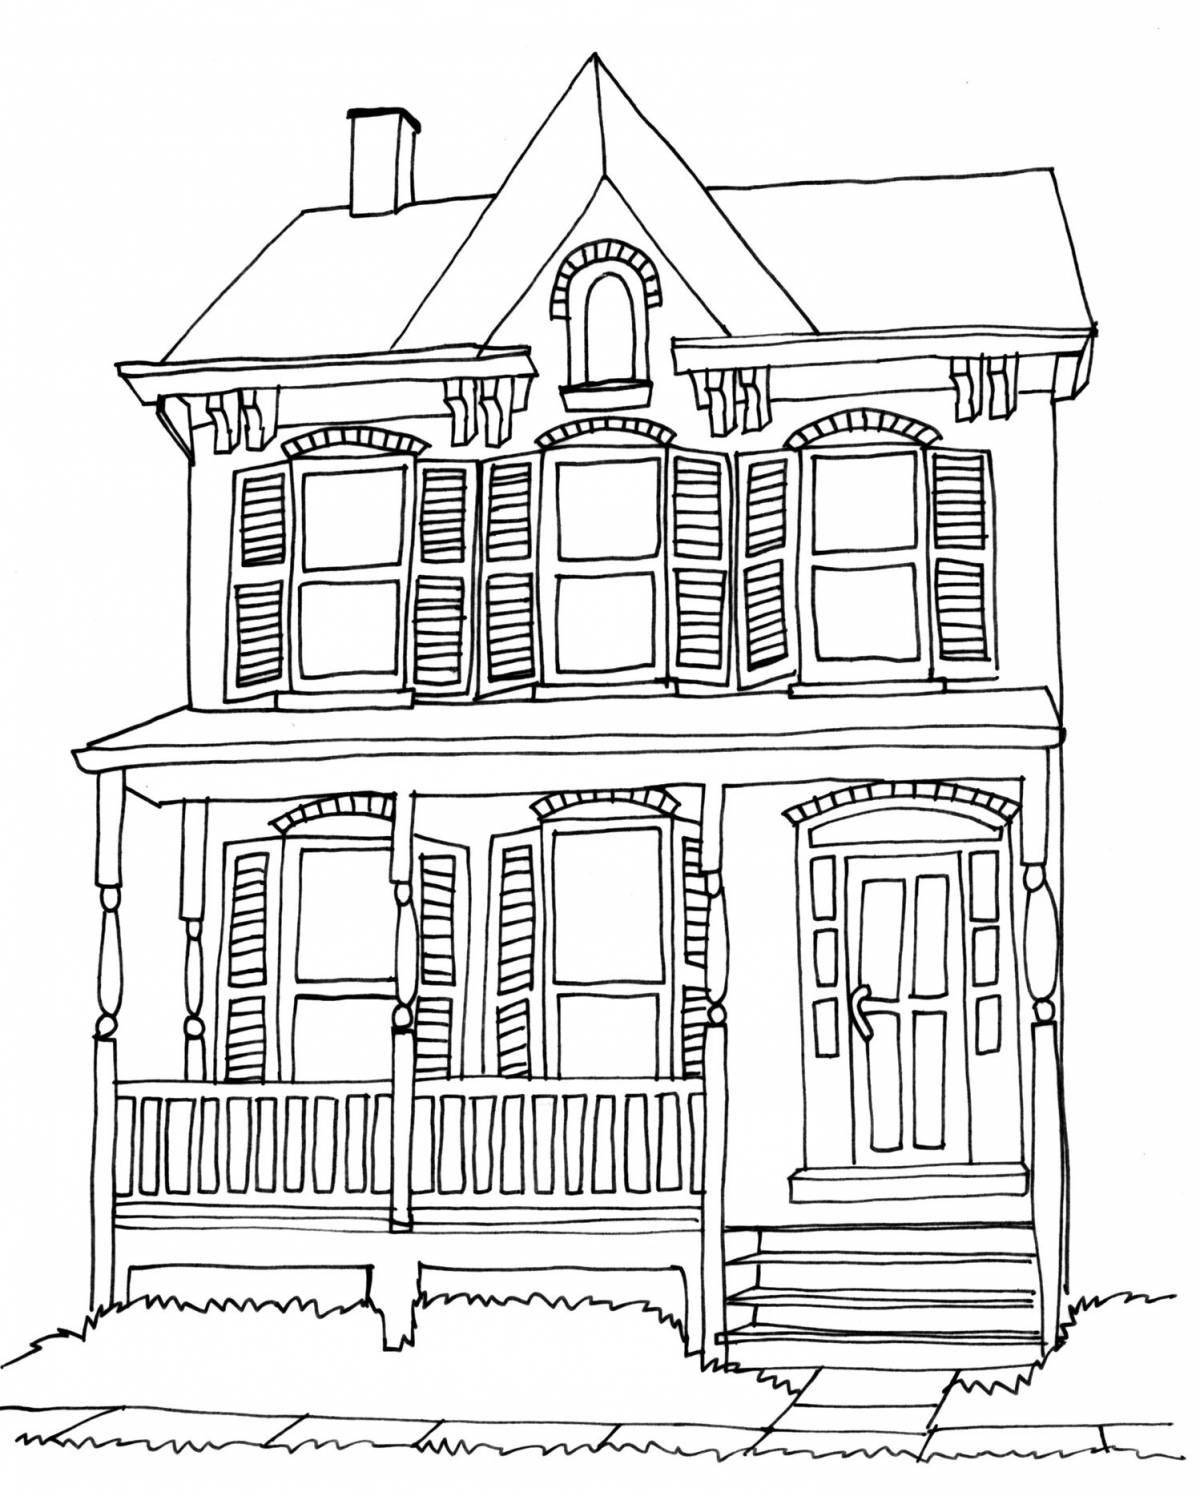 Fun house facade coloring book